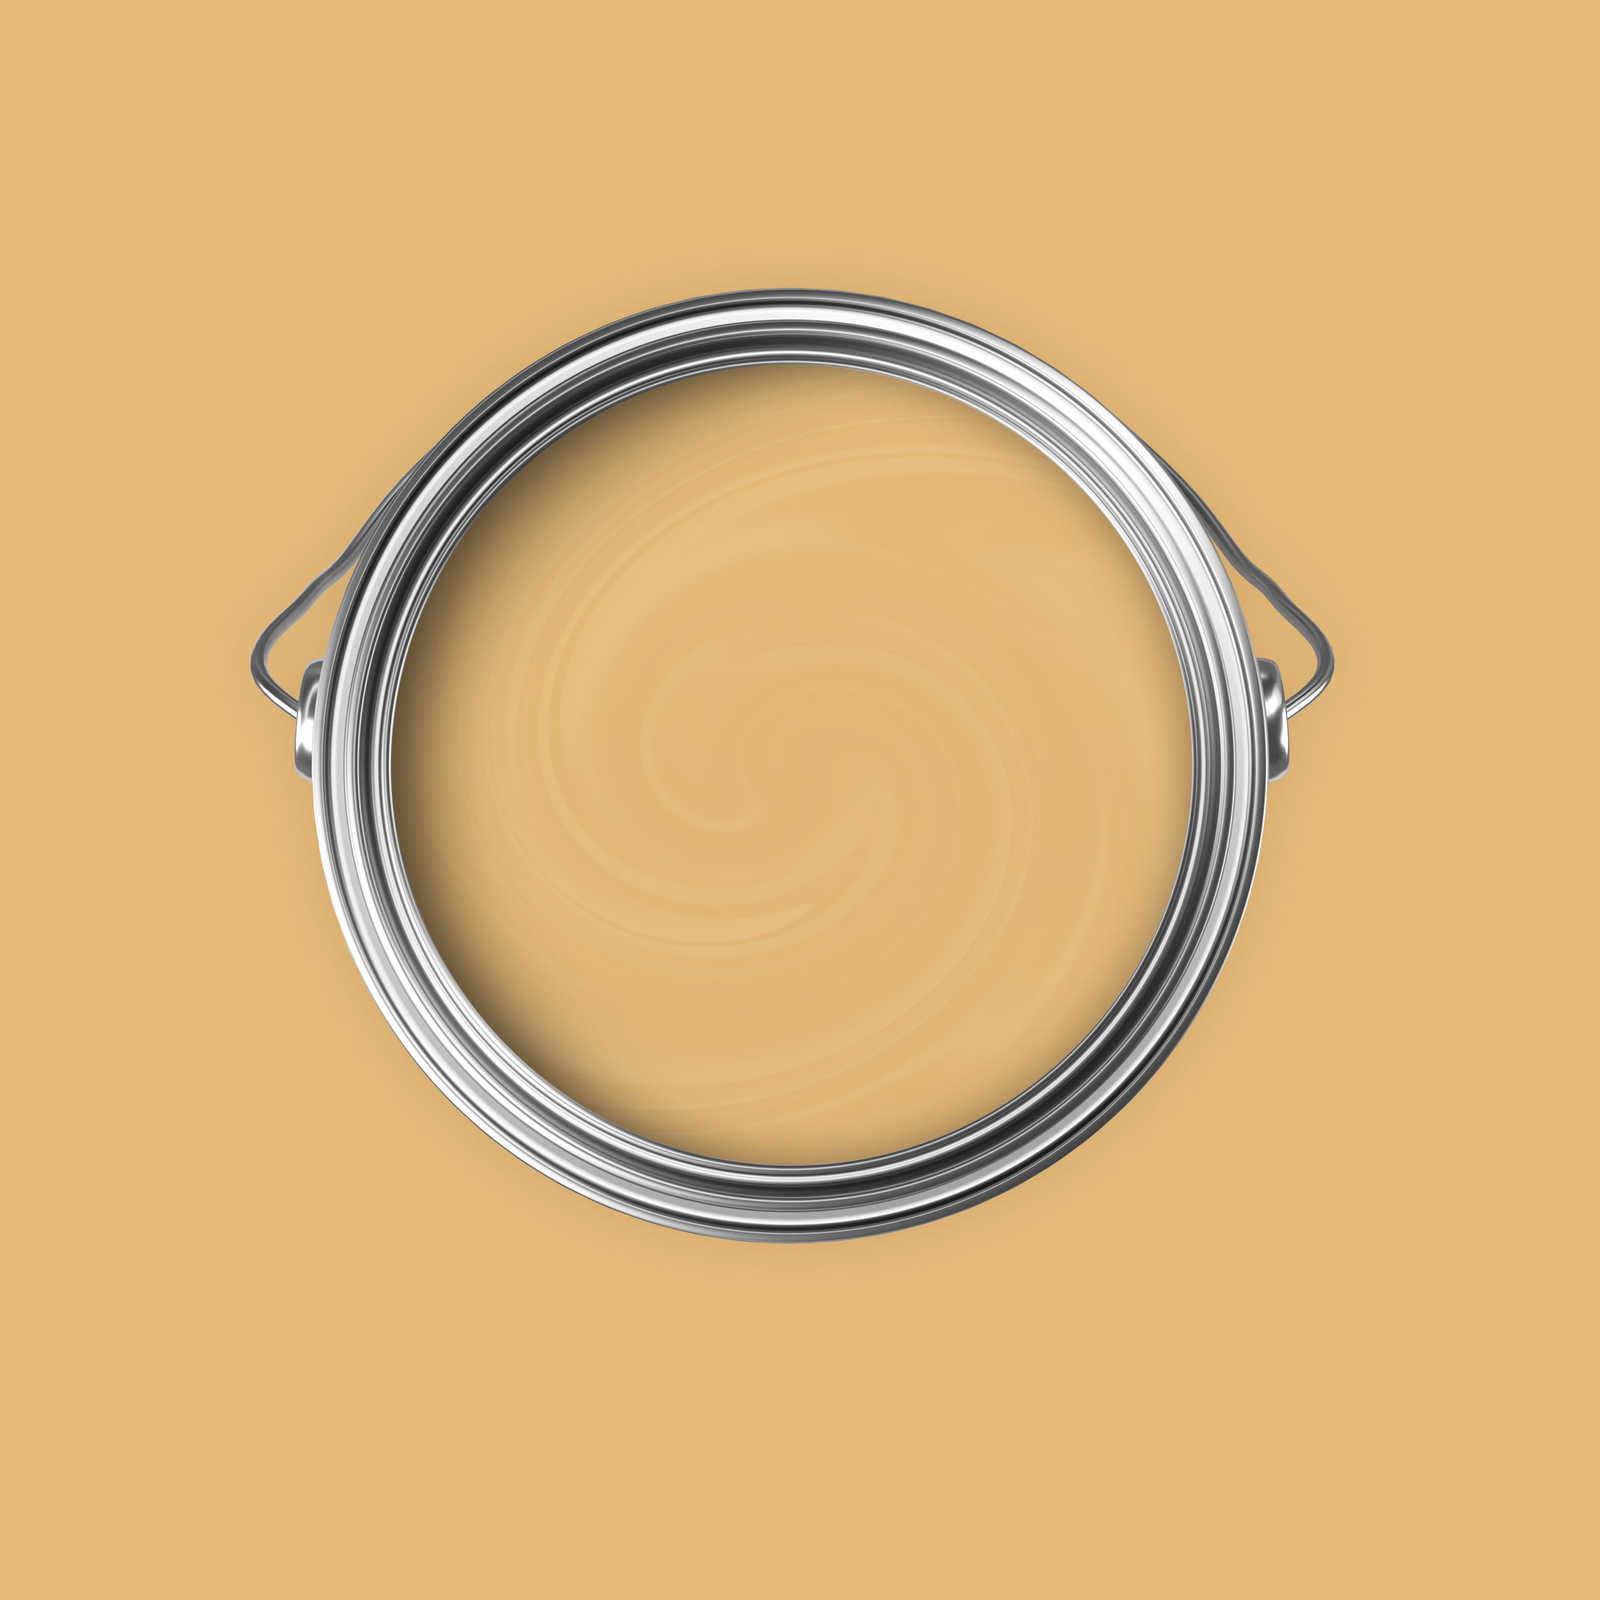             Premium Muurverf Wake Up Mosterdgeel »Beige Orange/Sassy Saffron« NW811 – 5 liter
        